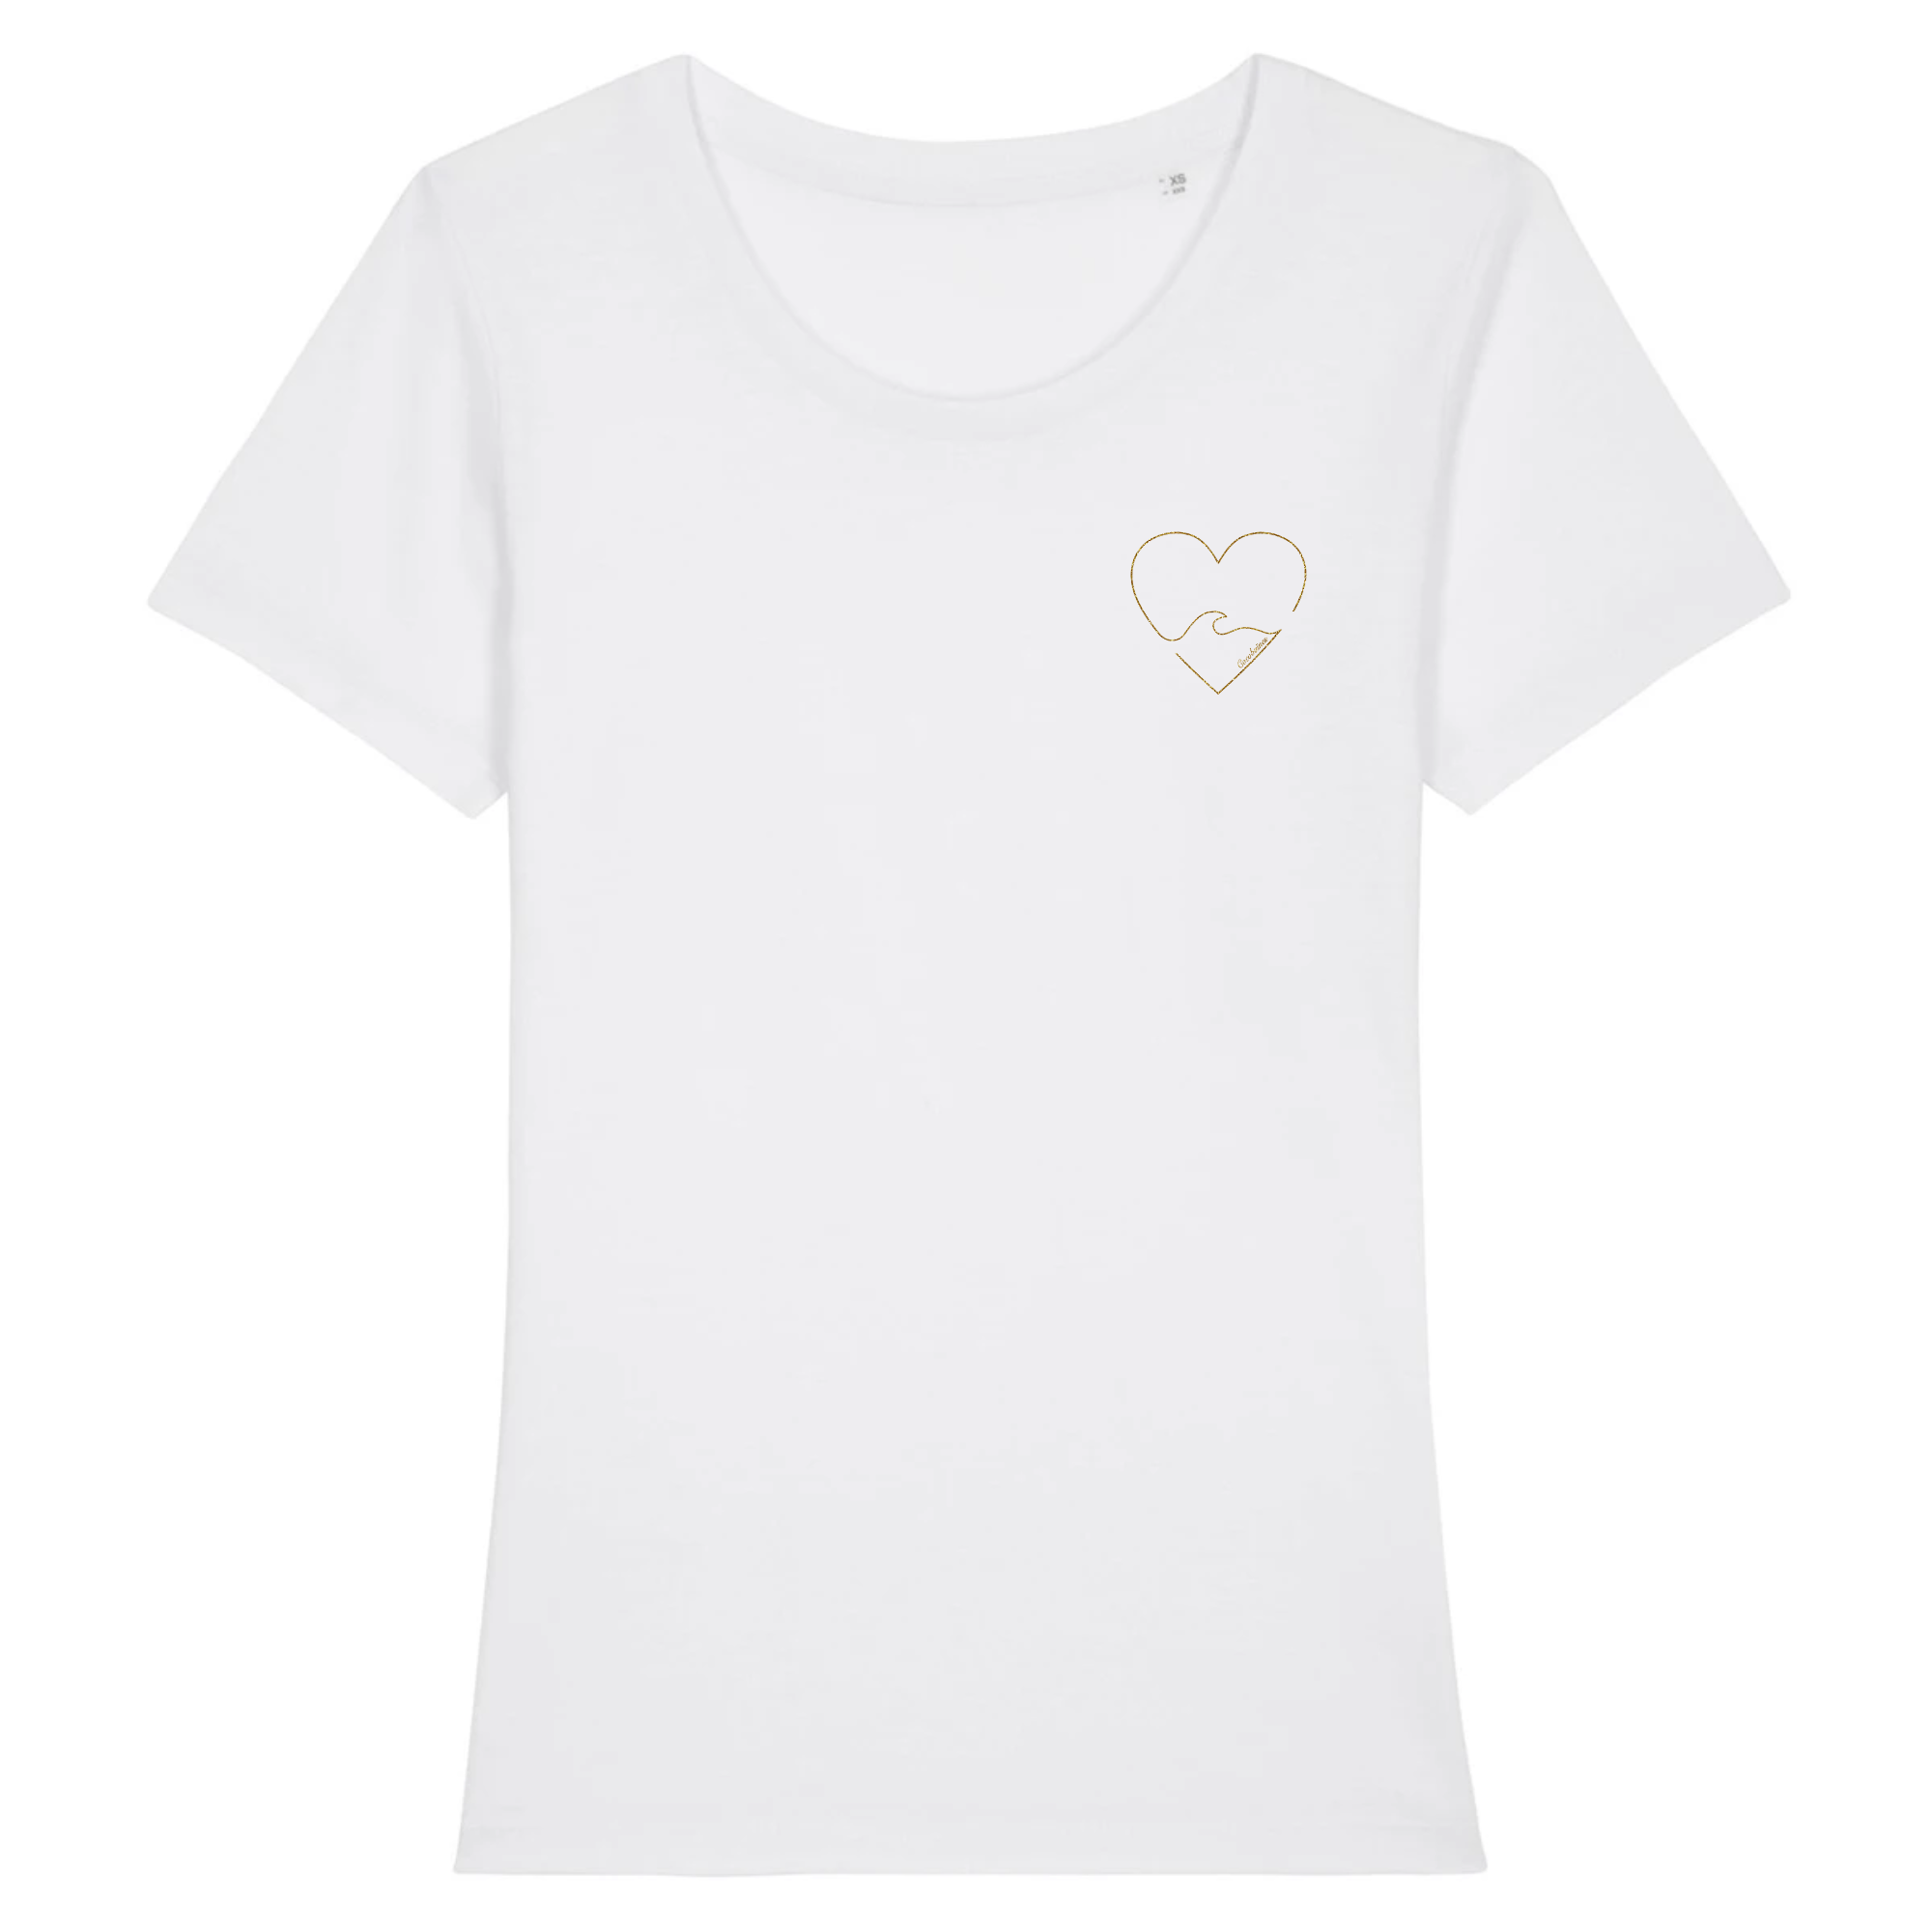 T-shirt femme coton bio Golden heart Blanc